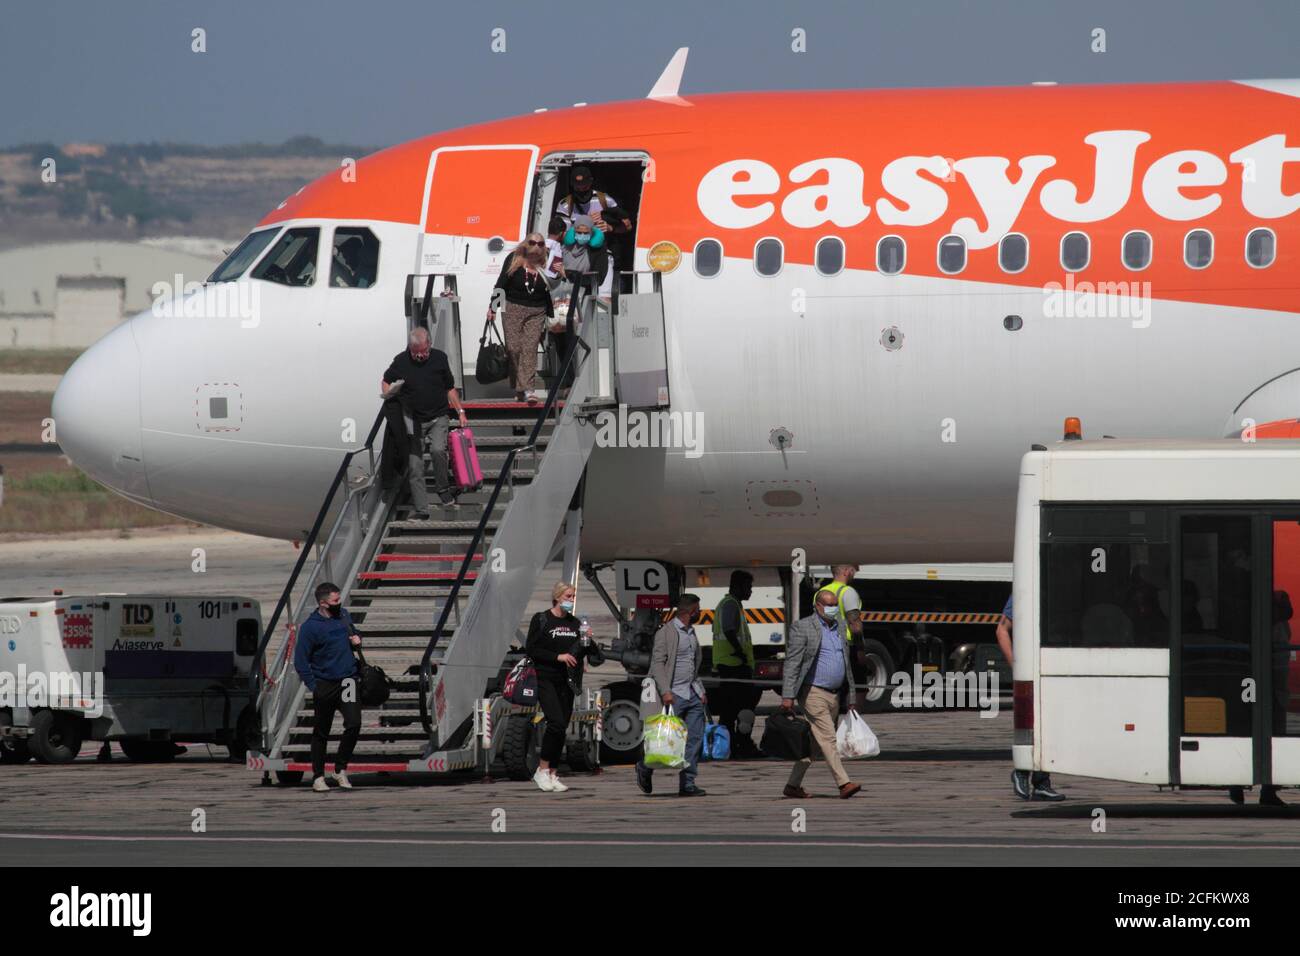 Los pasajeros que lleven mascarillas desembarcan de un avión a reacción EasyJet Airbus A320neo en Malta. Impacto del coronavirus COVID-19 en los viajes aéreos. Foto de stock